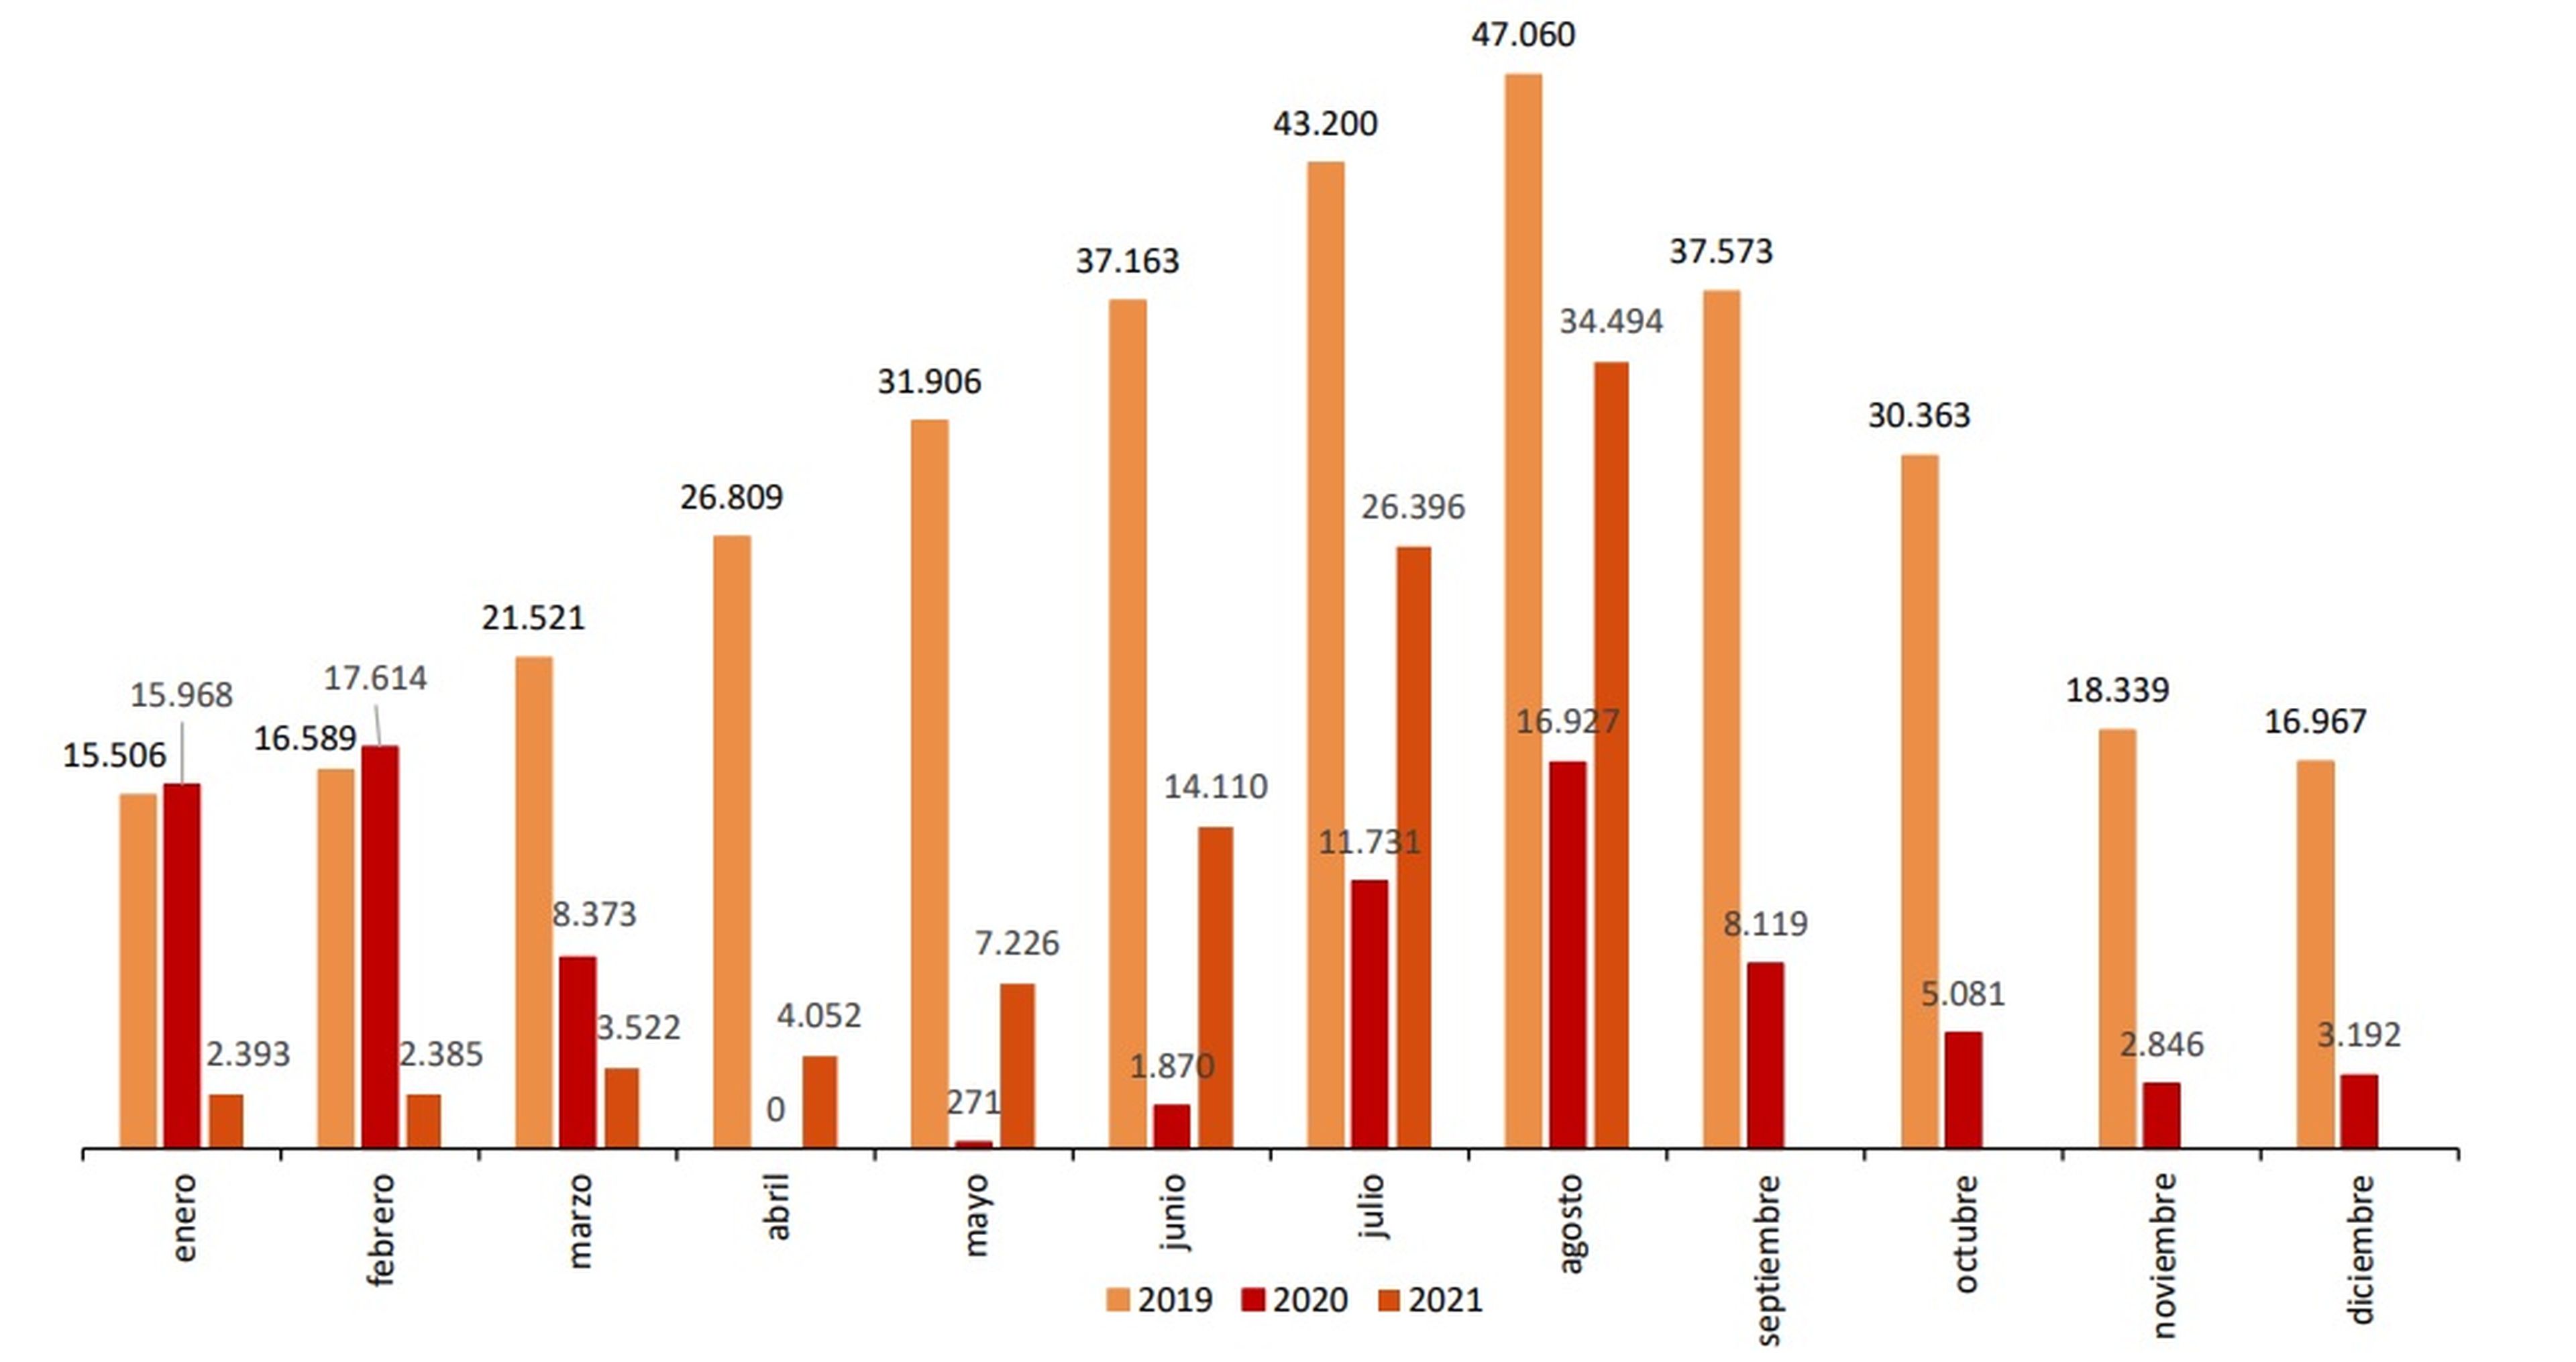 Pernoctaciones mensuales. Comparativa 2019-2020-2021. Instituto Nacional de Estadística (INE).